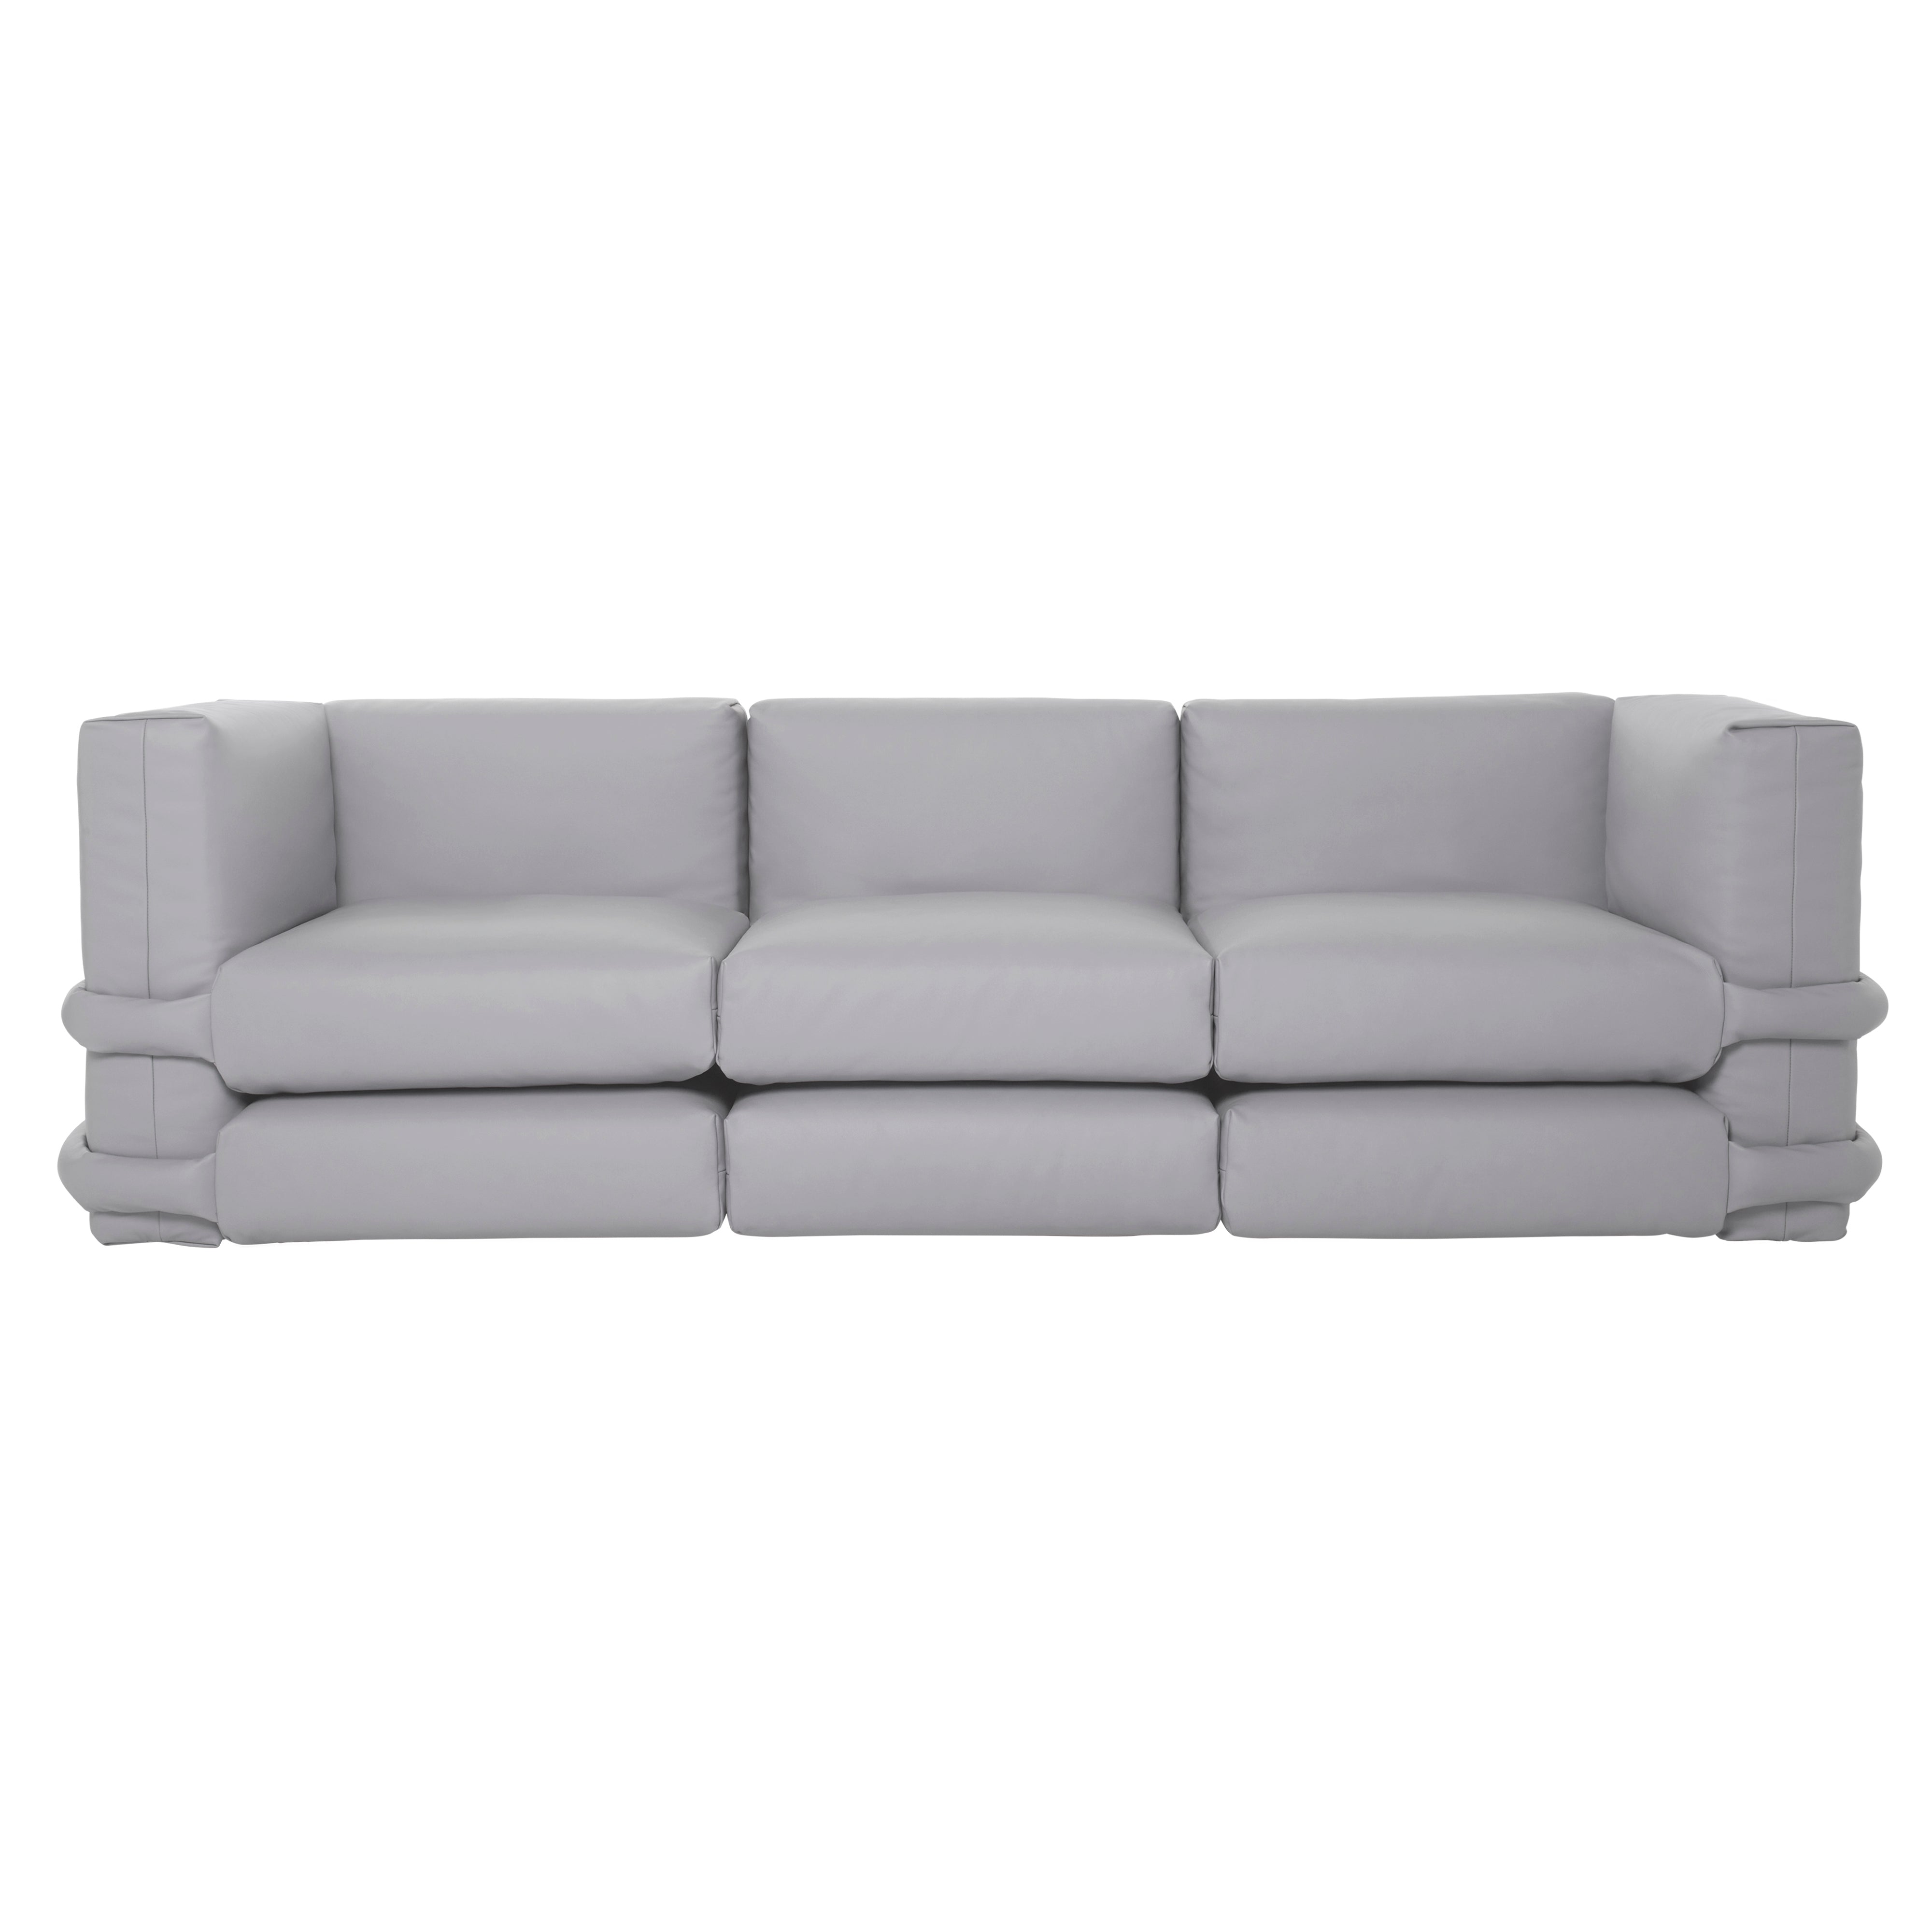 Pillow Modular Sofa: Configuration 3 + Florida Leather